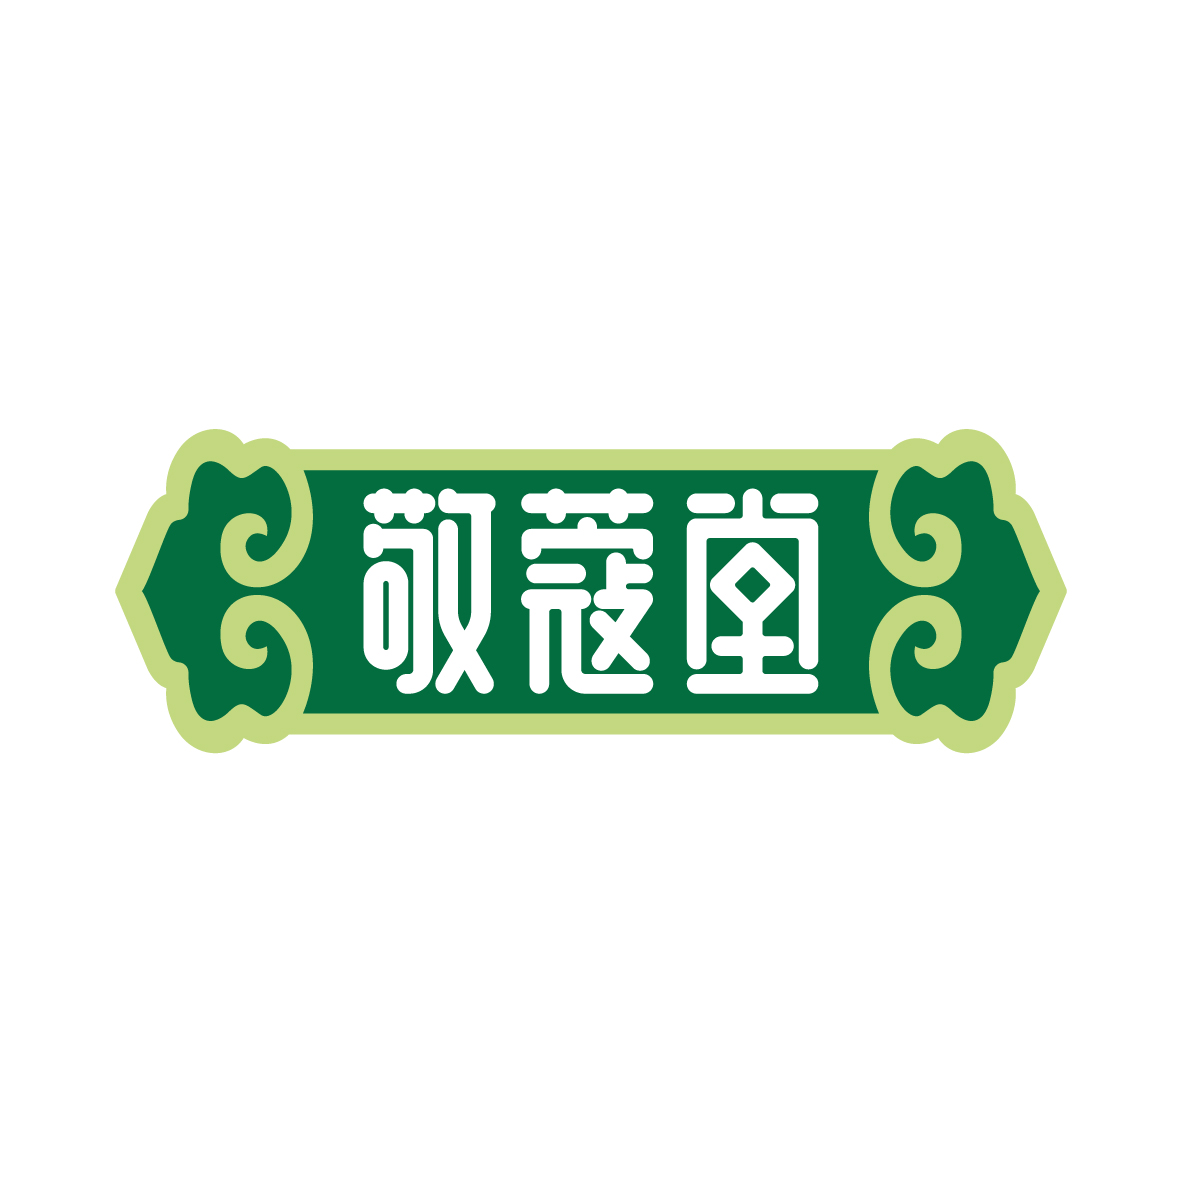 广州市龙曦生物科技有限公司商标敬蔻堂（05类）多少钱？